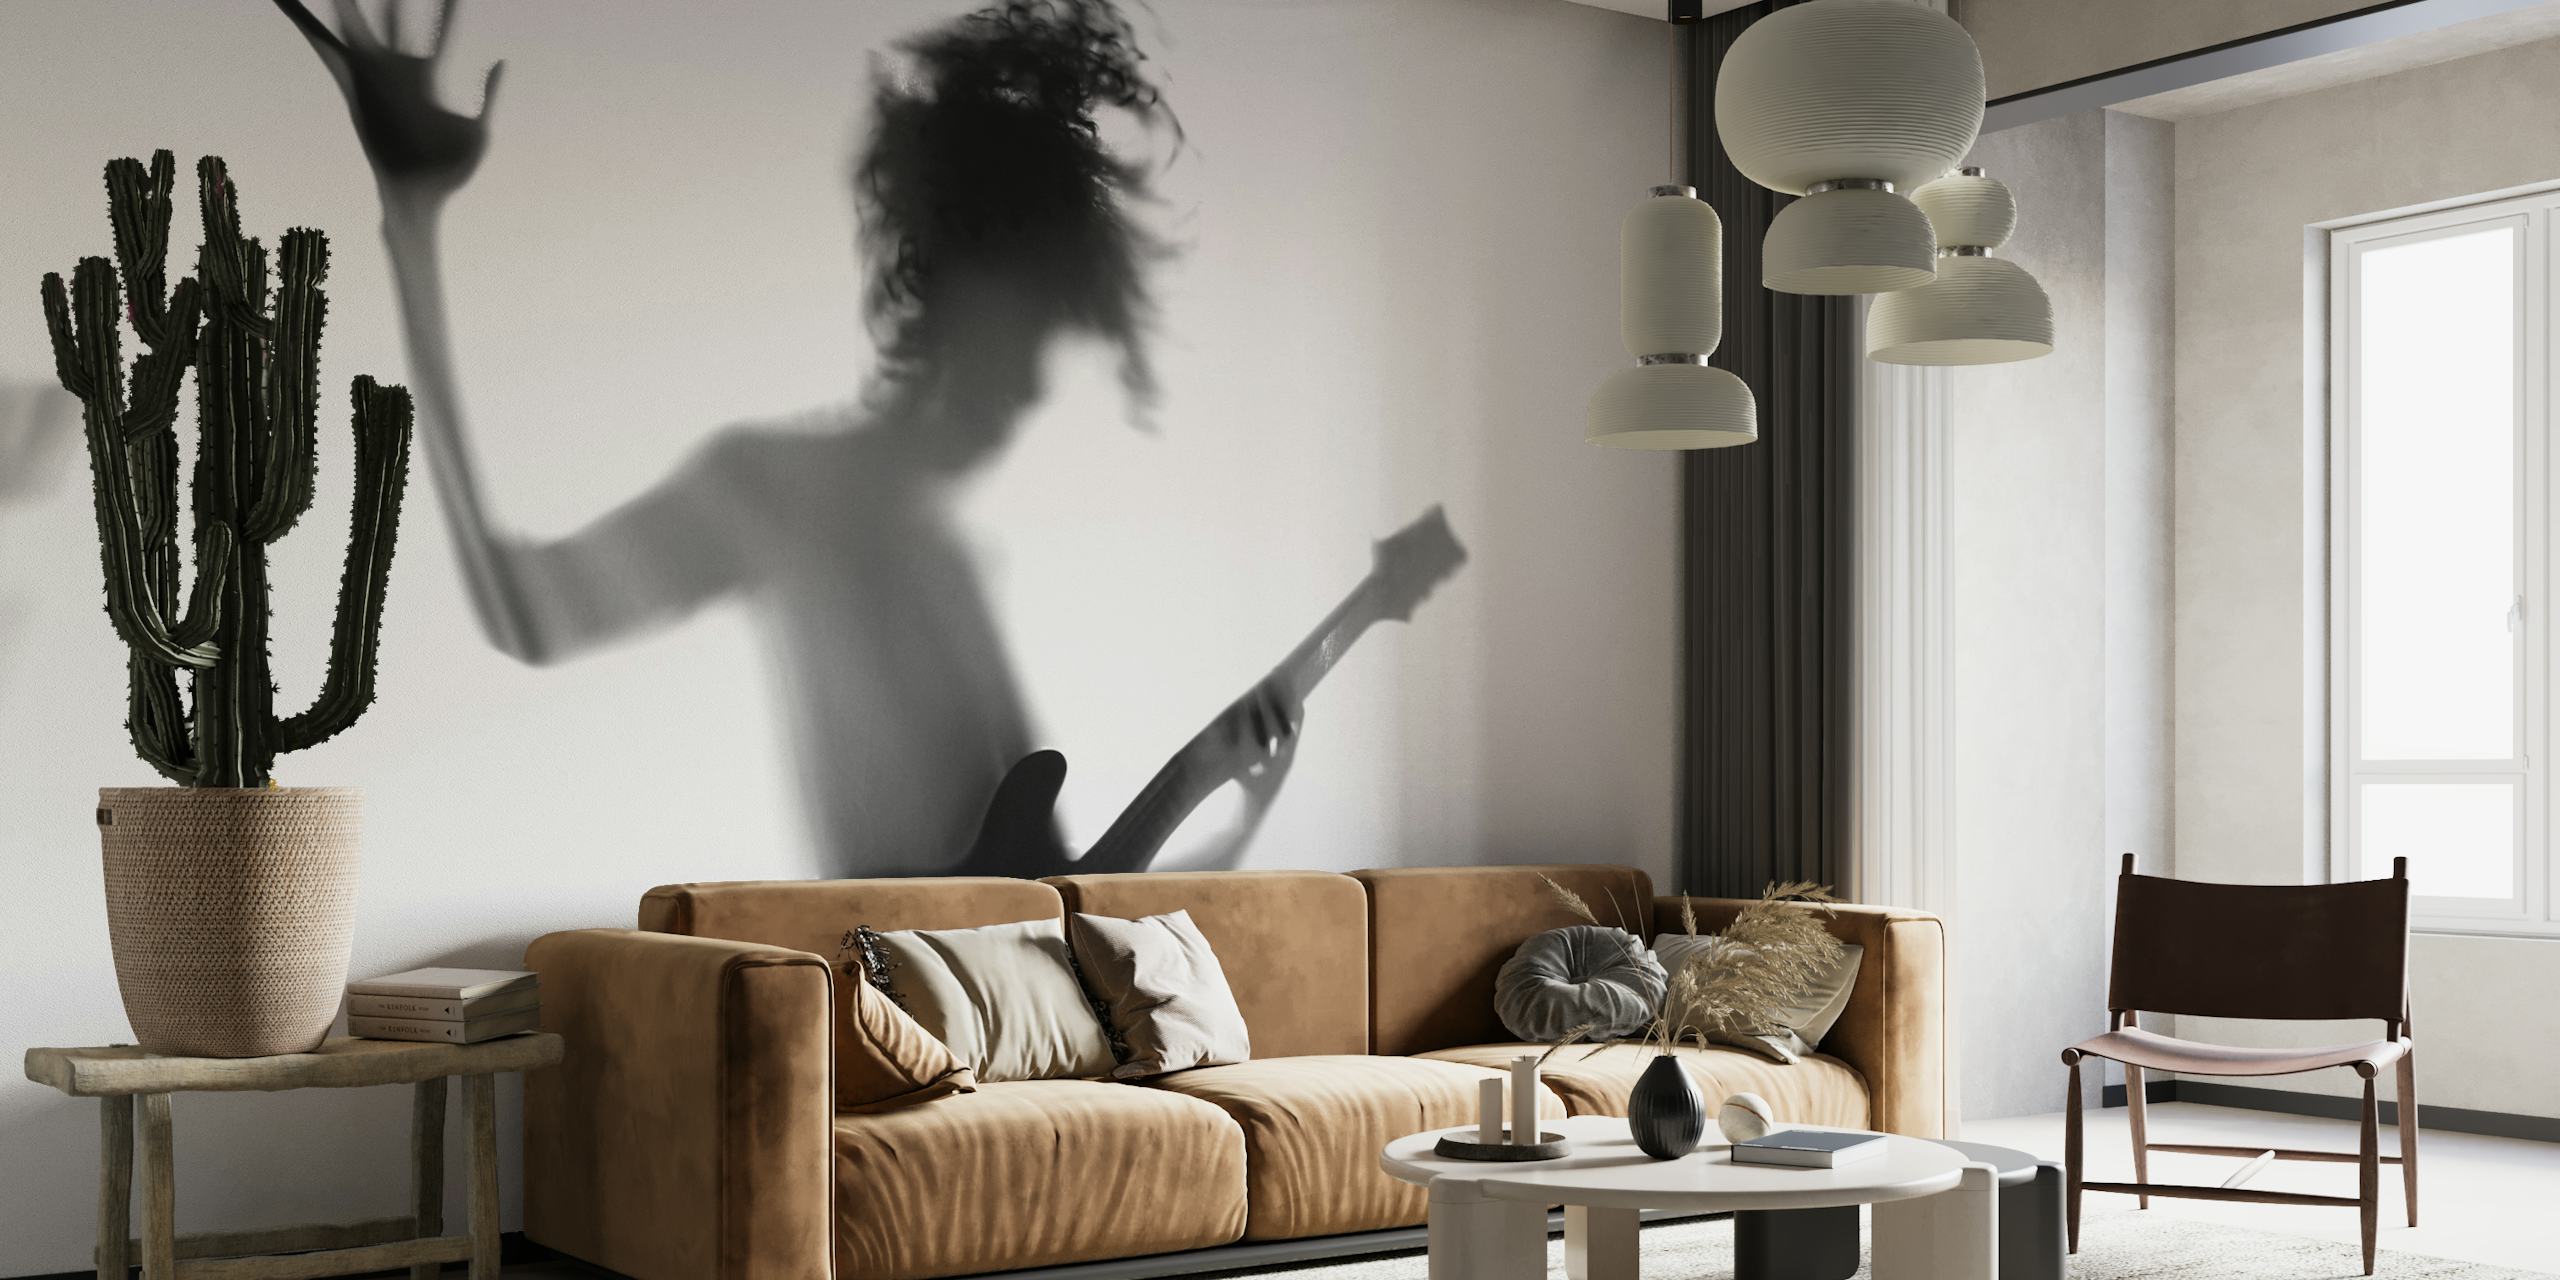 Siluett av en person som spelar gitarr i en dynamisk pose i svart och vitt.